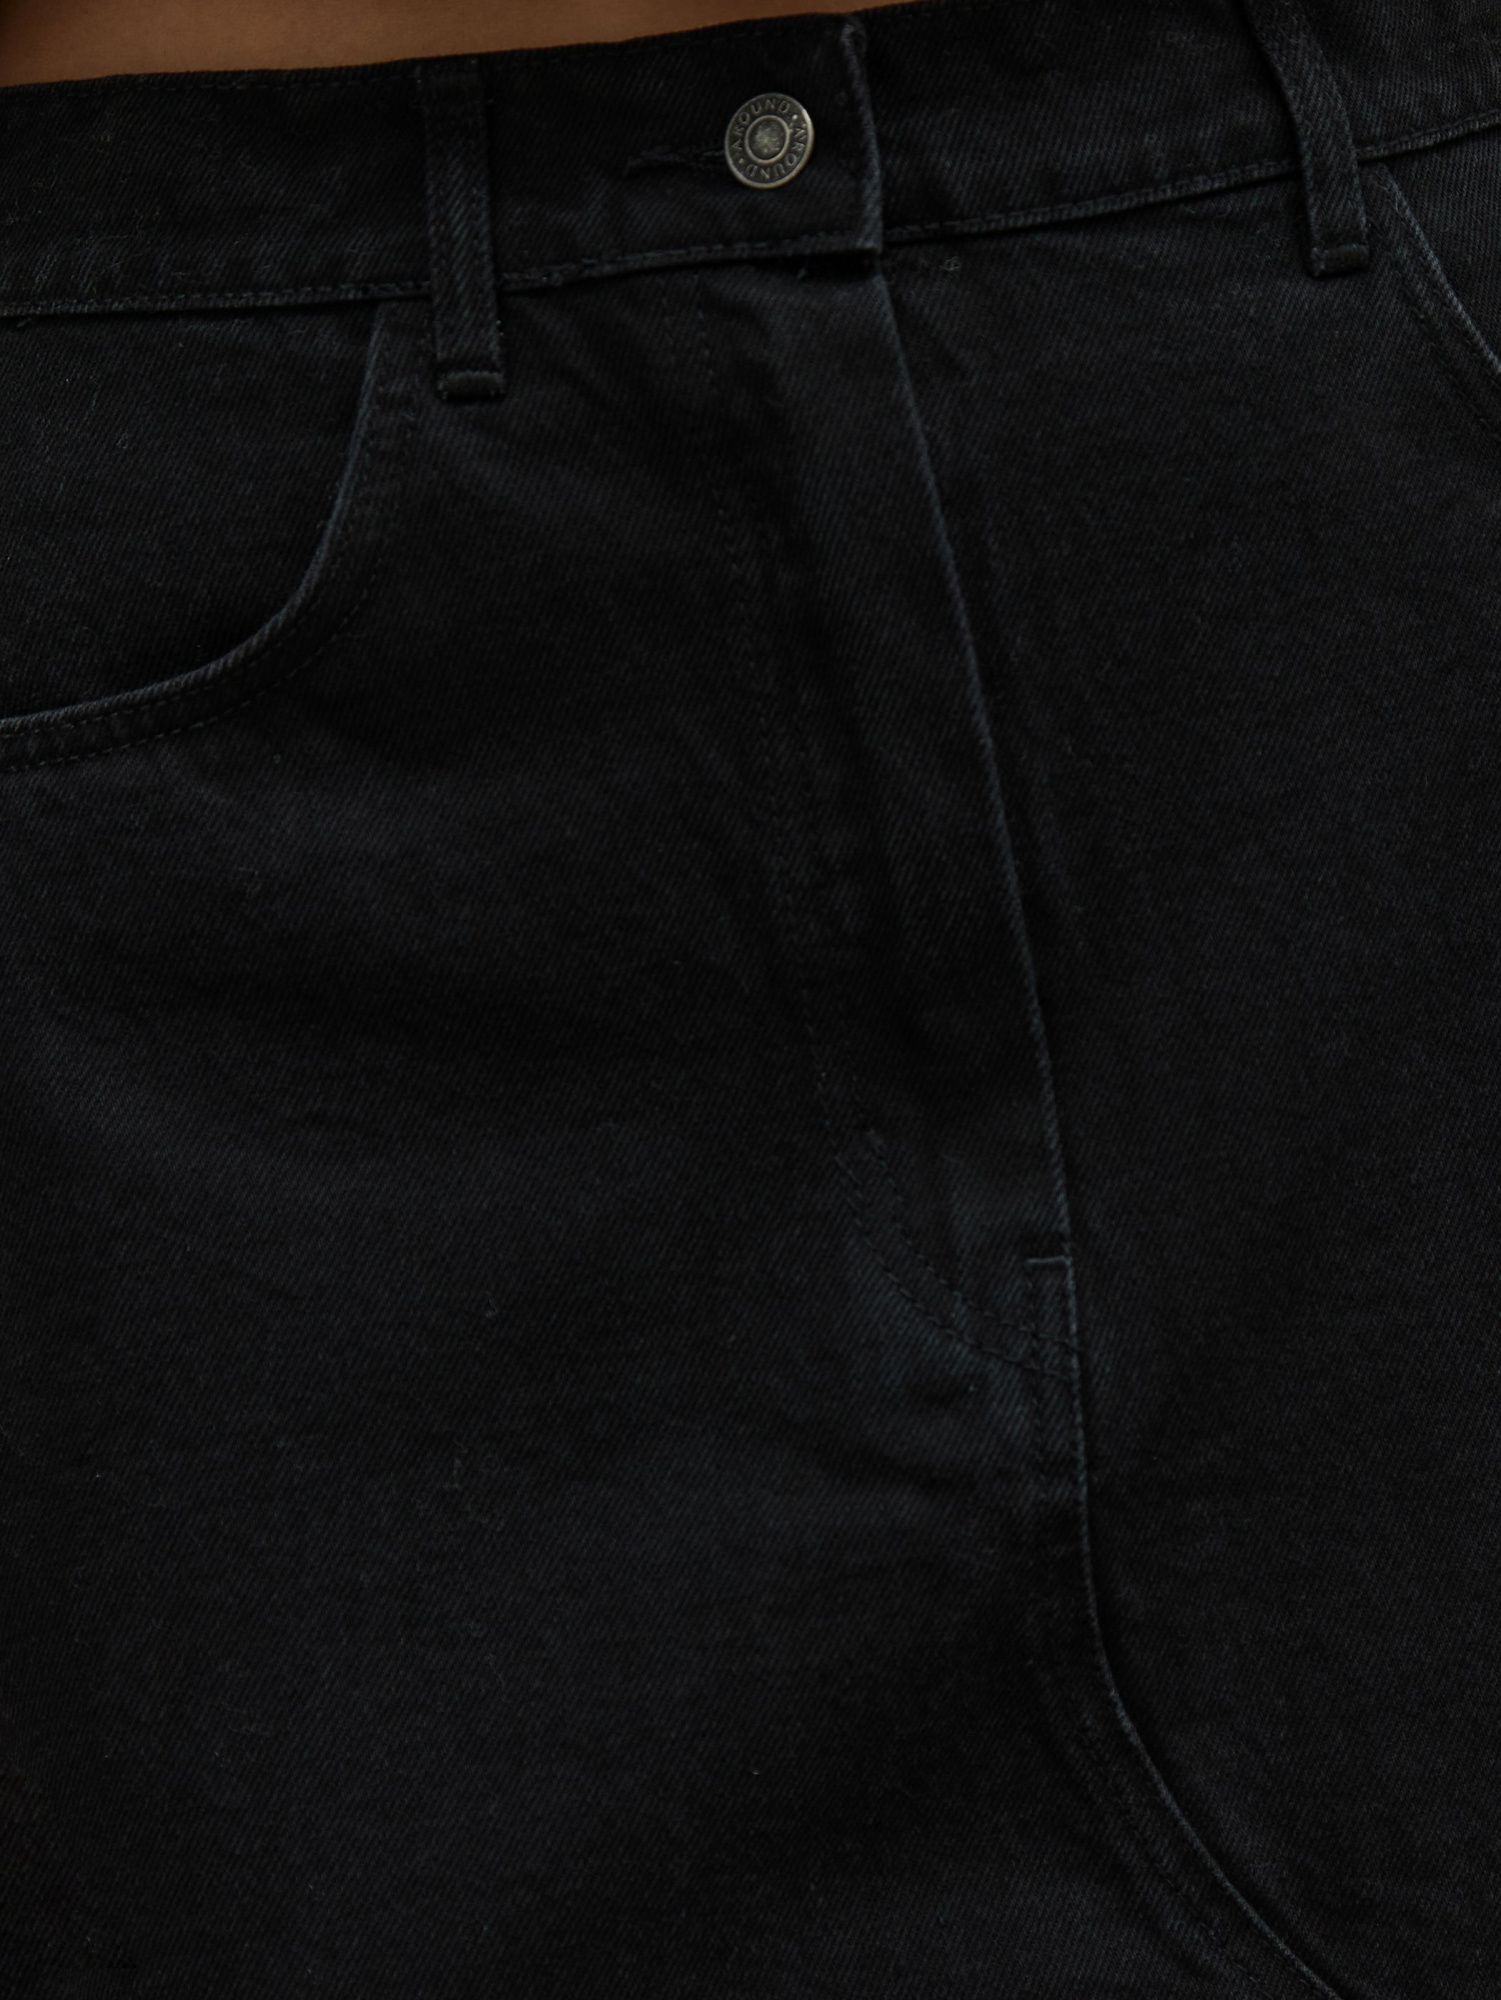 Юбка джинсовая сложного кроя черный - фото 5. Around